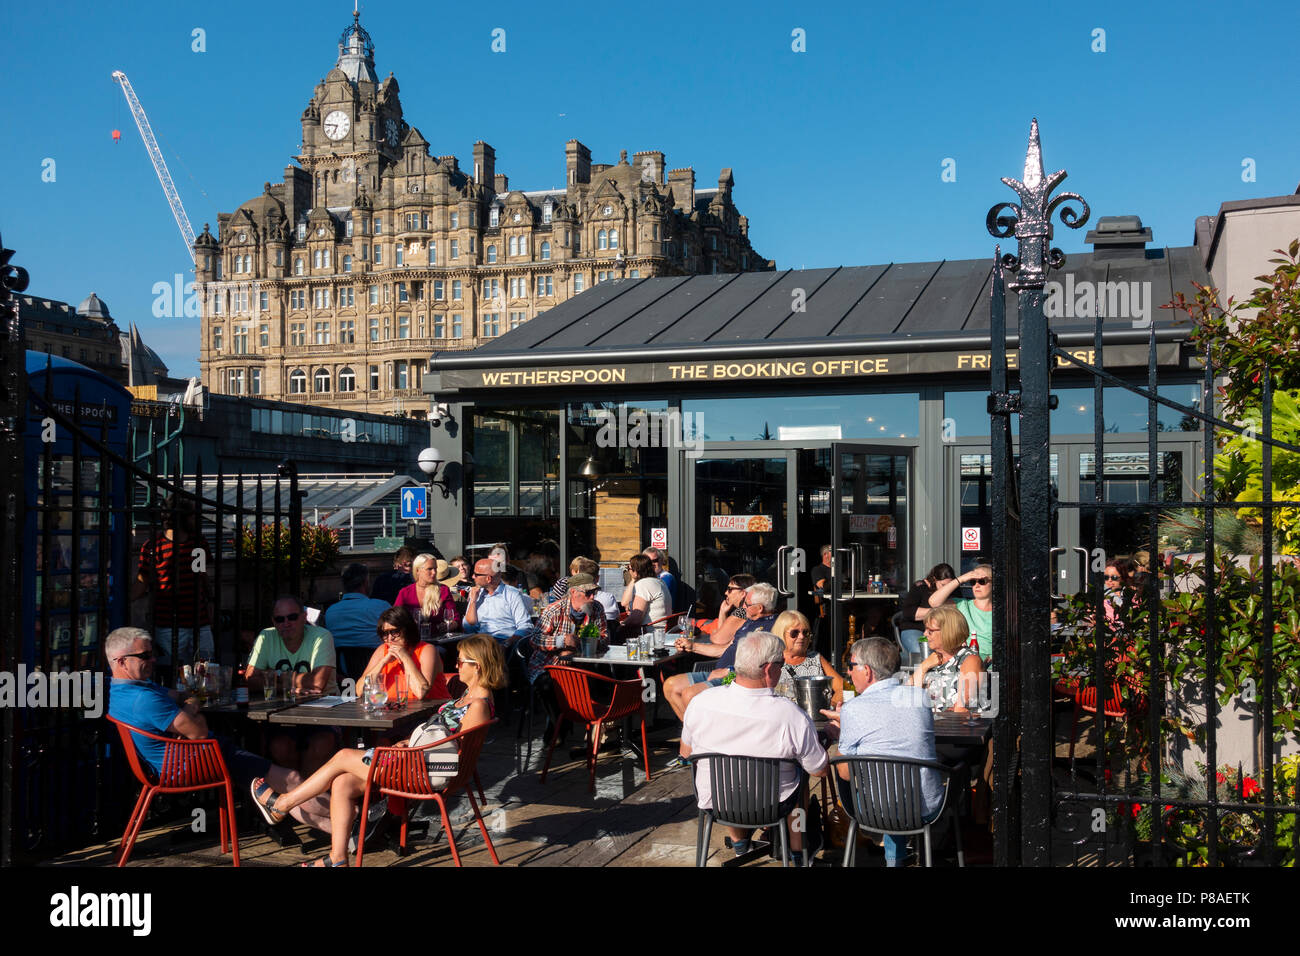 Besetzt Wetherspoon Pub, das Booking Office, Bar im Freien im Sommer am Bahnhof Waverley Station in Edinburgh, Schottland, Großbritannien Stockfoto